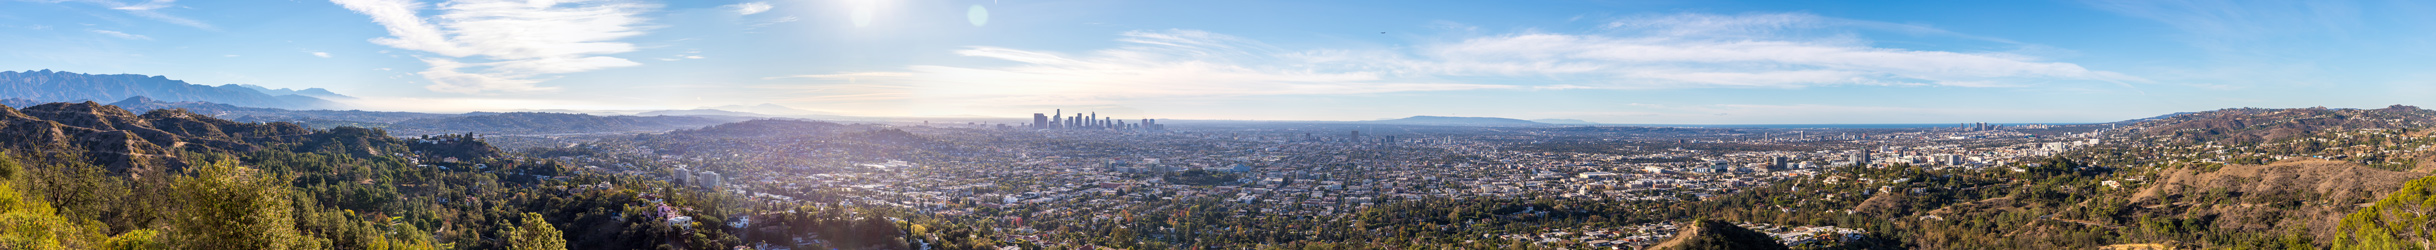 Los Angeles - Novembre 2018